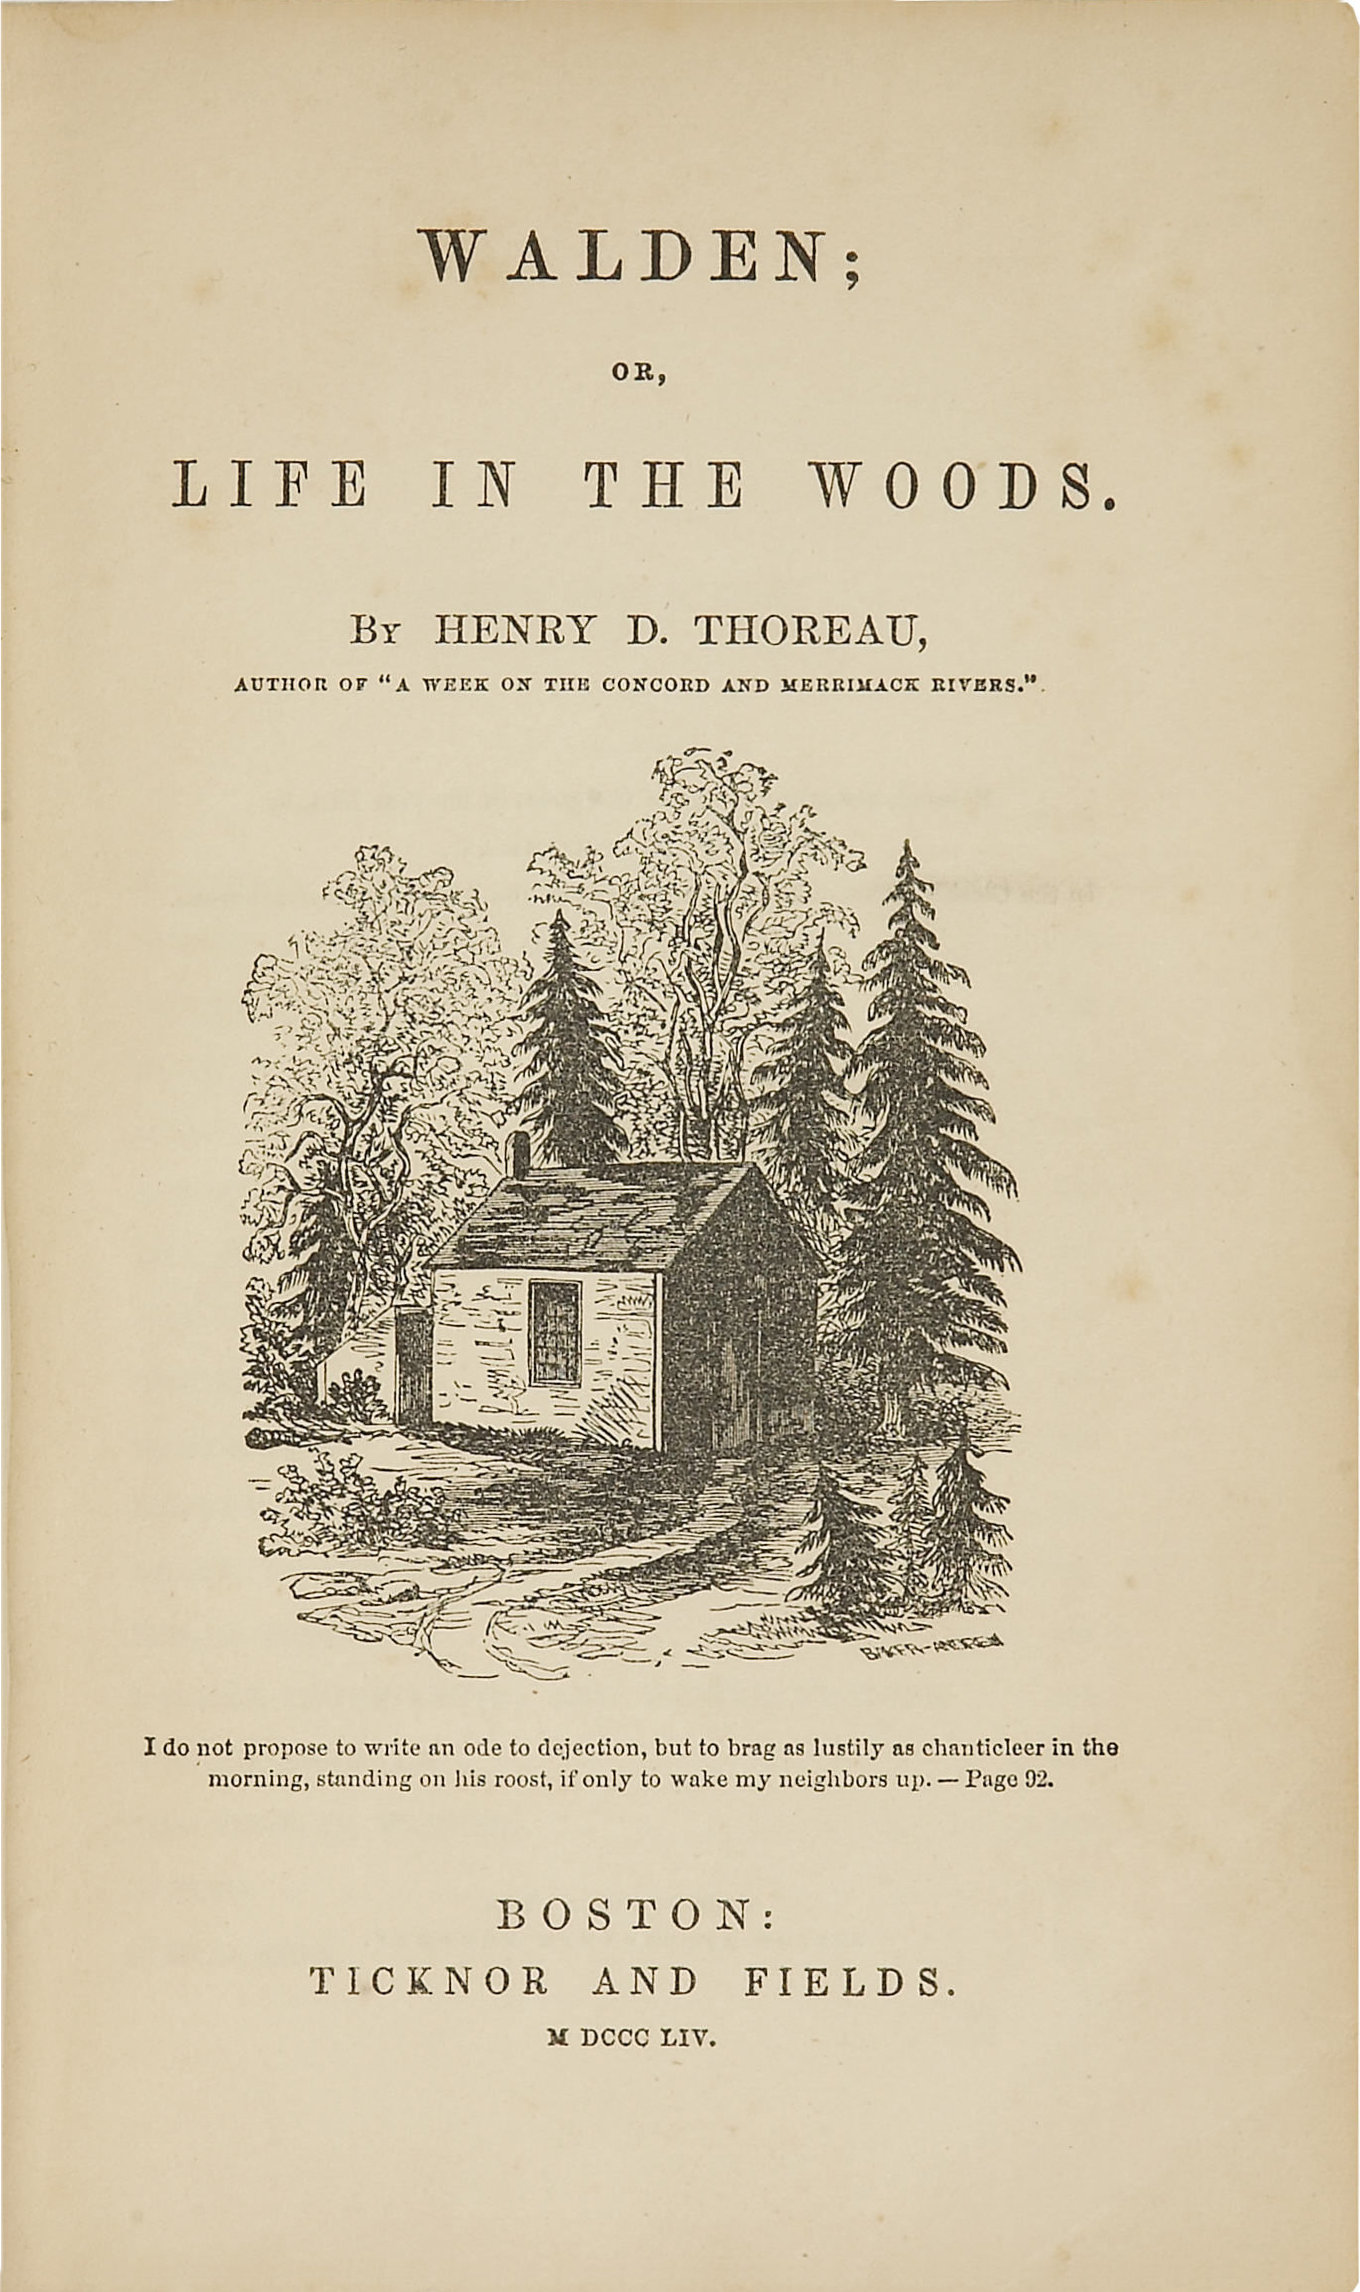 Pagina iniziale della prima edizione di Walden, con un disegno della sorella di Henry, Sophia.